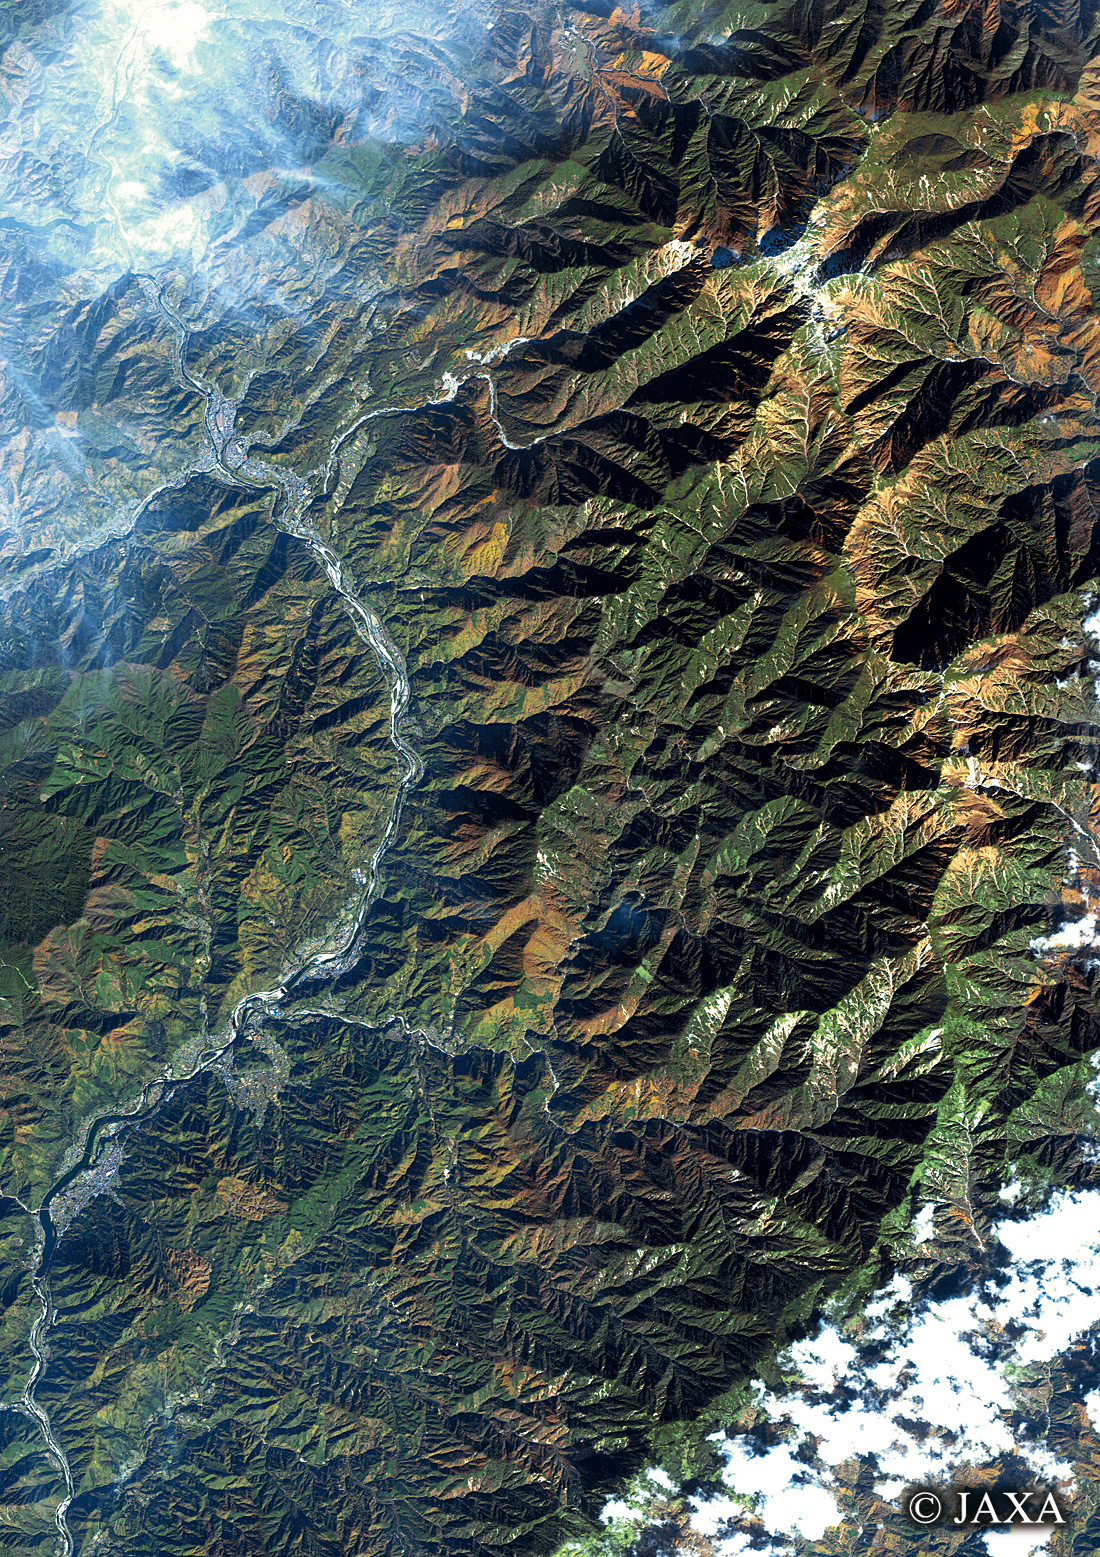 だいちから見た日本の都市 木曽川と木曽駒ケ岳:衛星画像